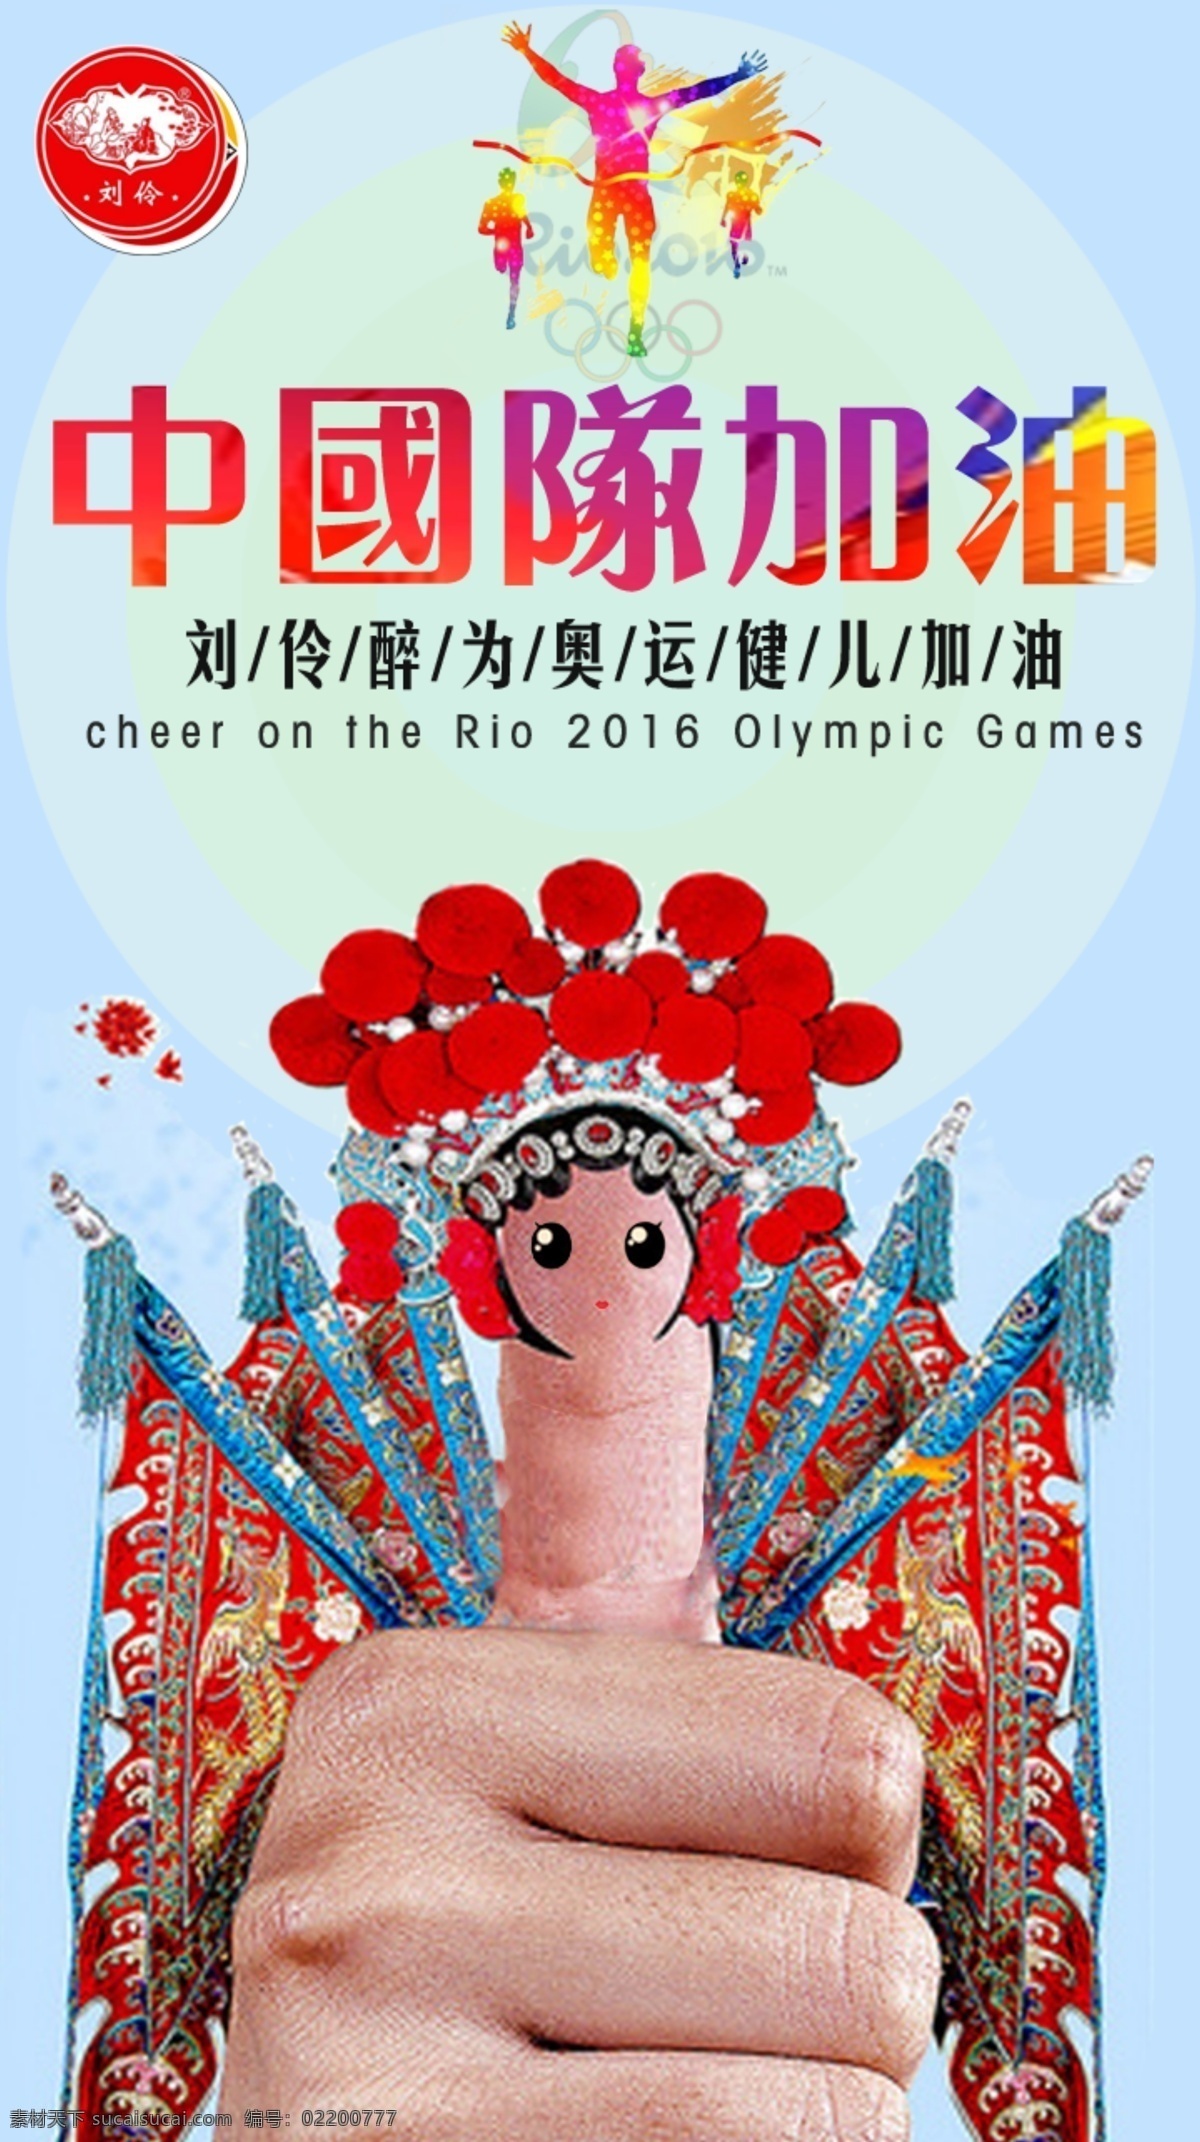 中国队 加油 宣传海报 奥运会 京剧文化 刘伶醉 奥运 健儿 里约 中国 2016 红色